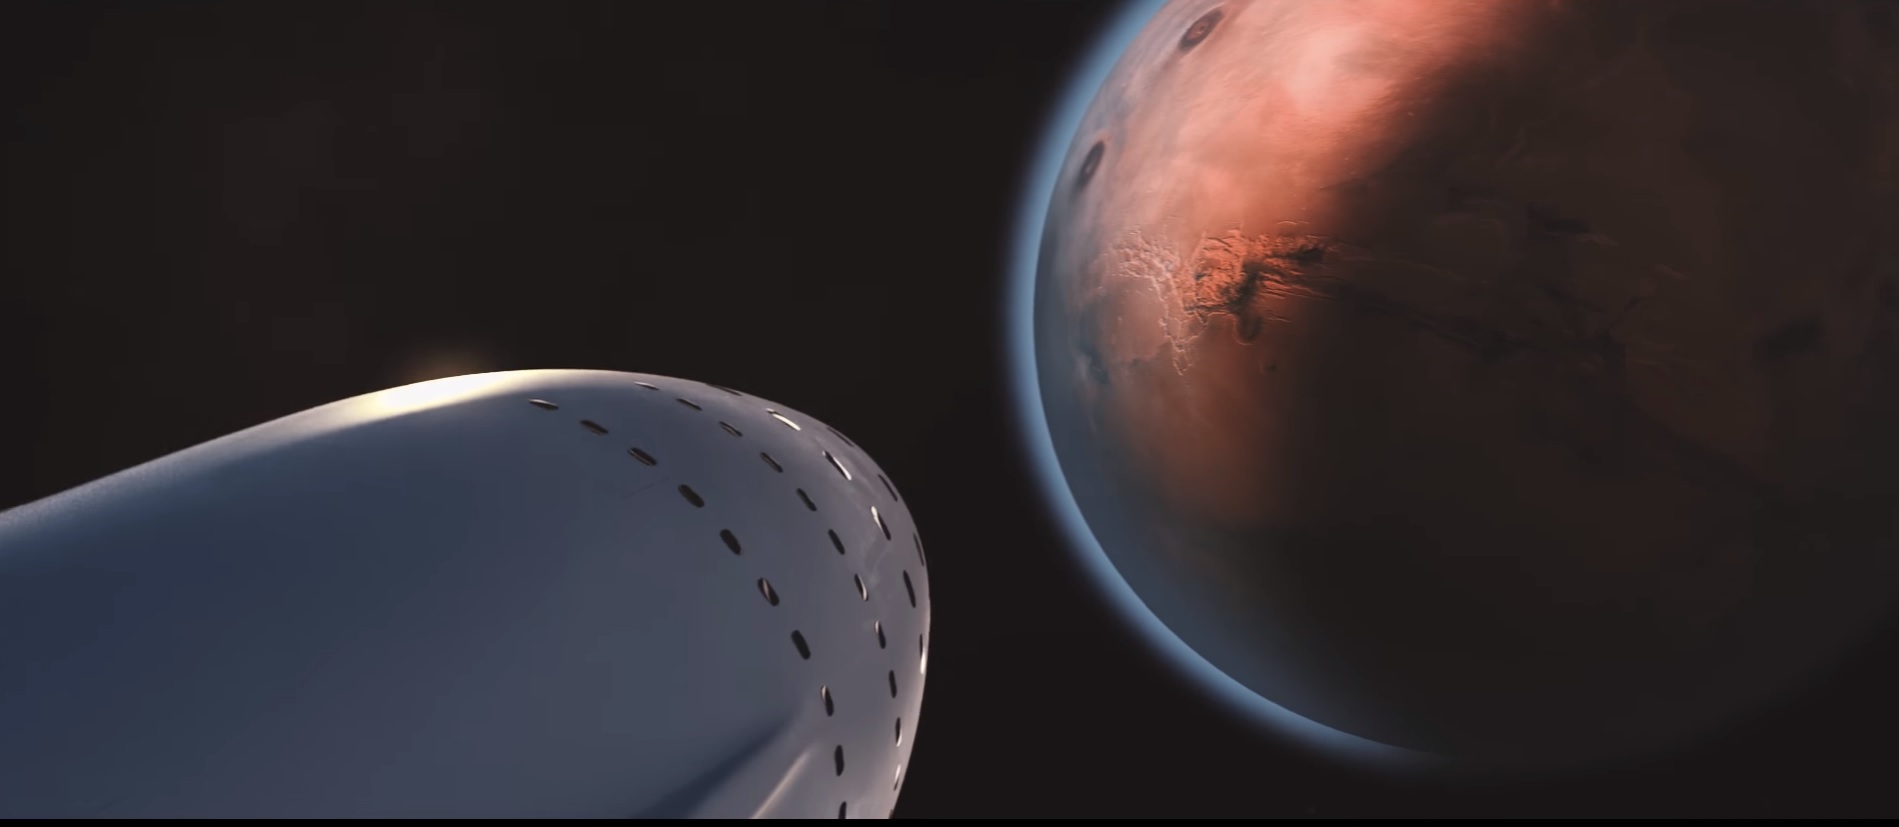 Ha Muskon múlik, az ember Földdé alakítjá át a Marsot